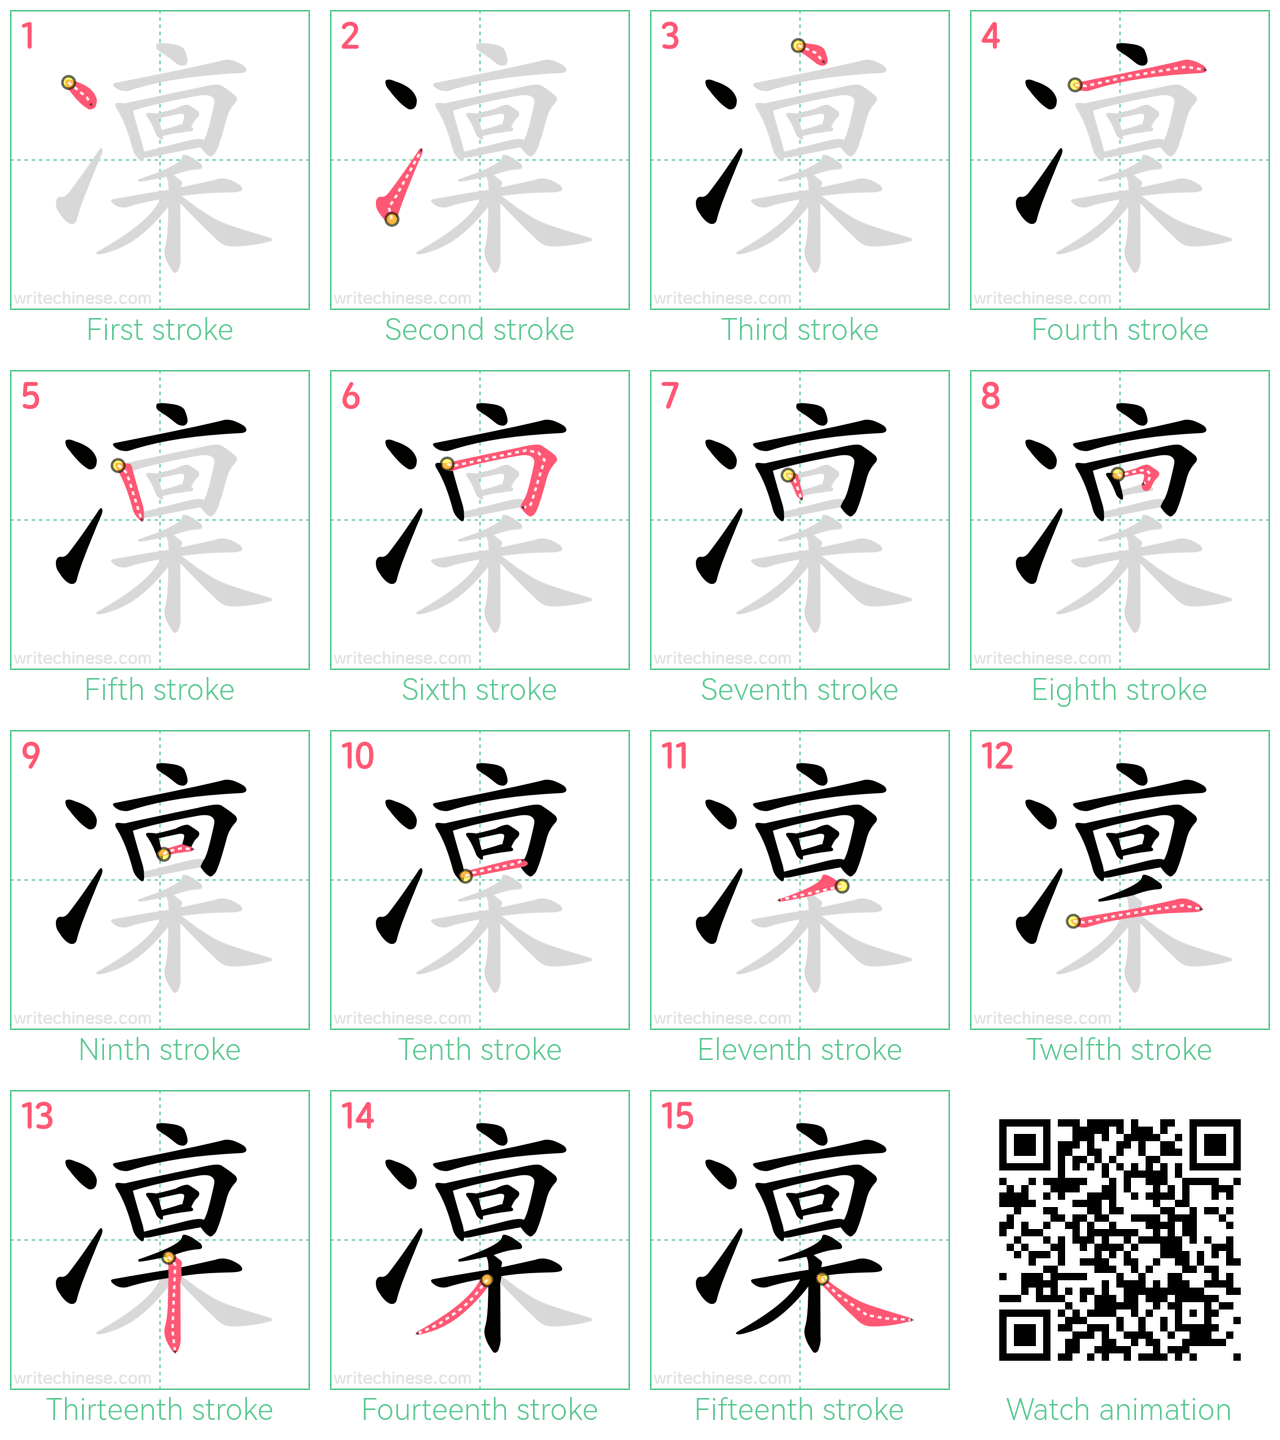 凜 step-by-step stroke order diagrams